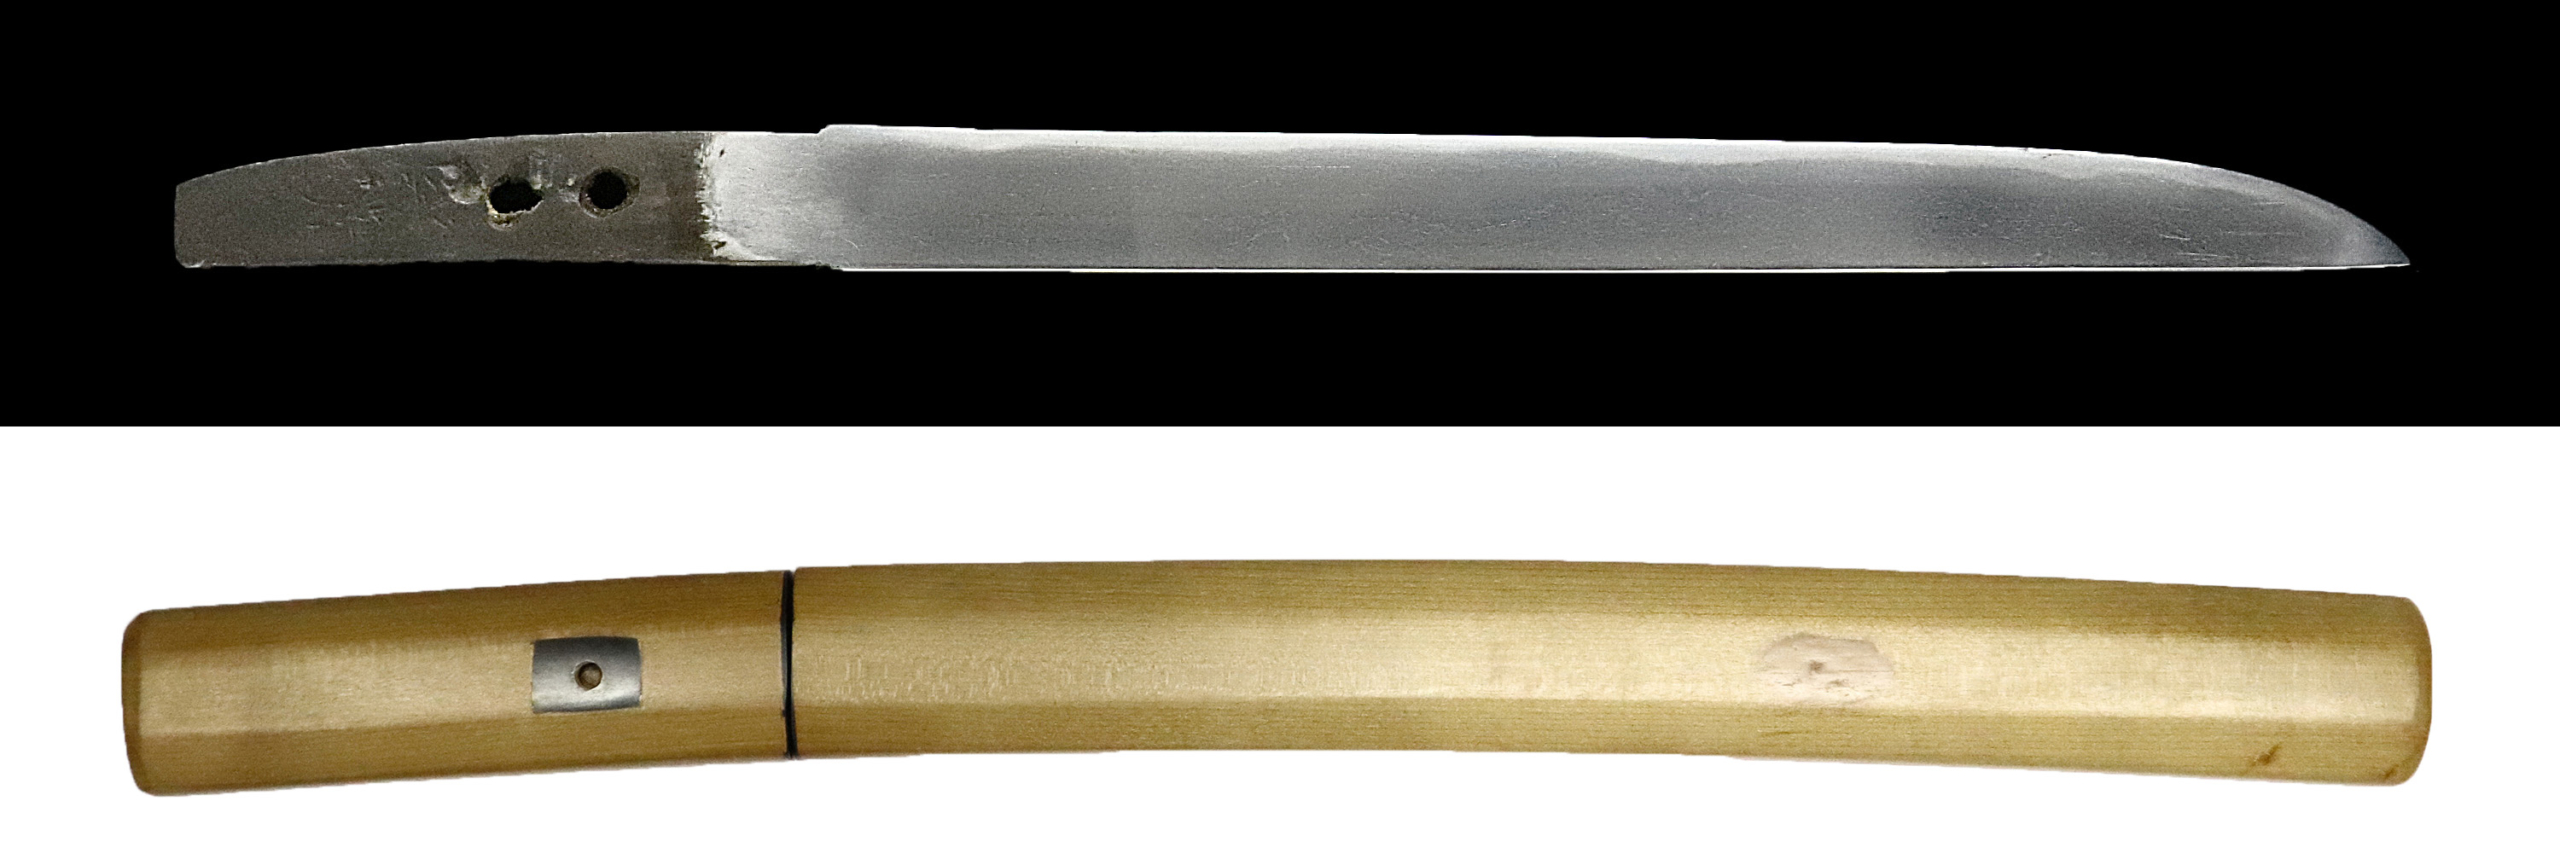 国光(白鞘)短刀 | 日本刀販売・刀剣販売の「勇進堂」| Katana Japanese Sword - YUSHINDOU